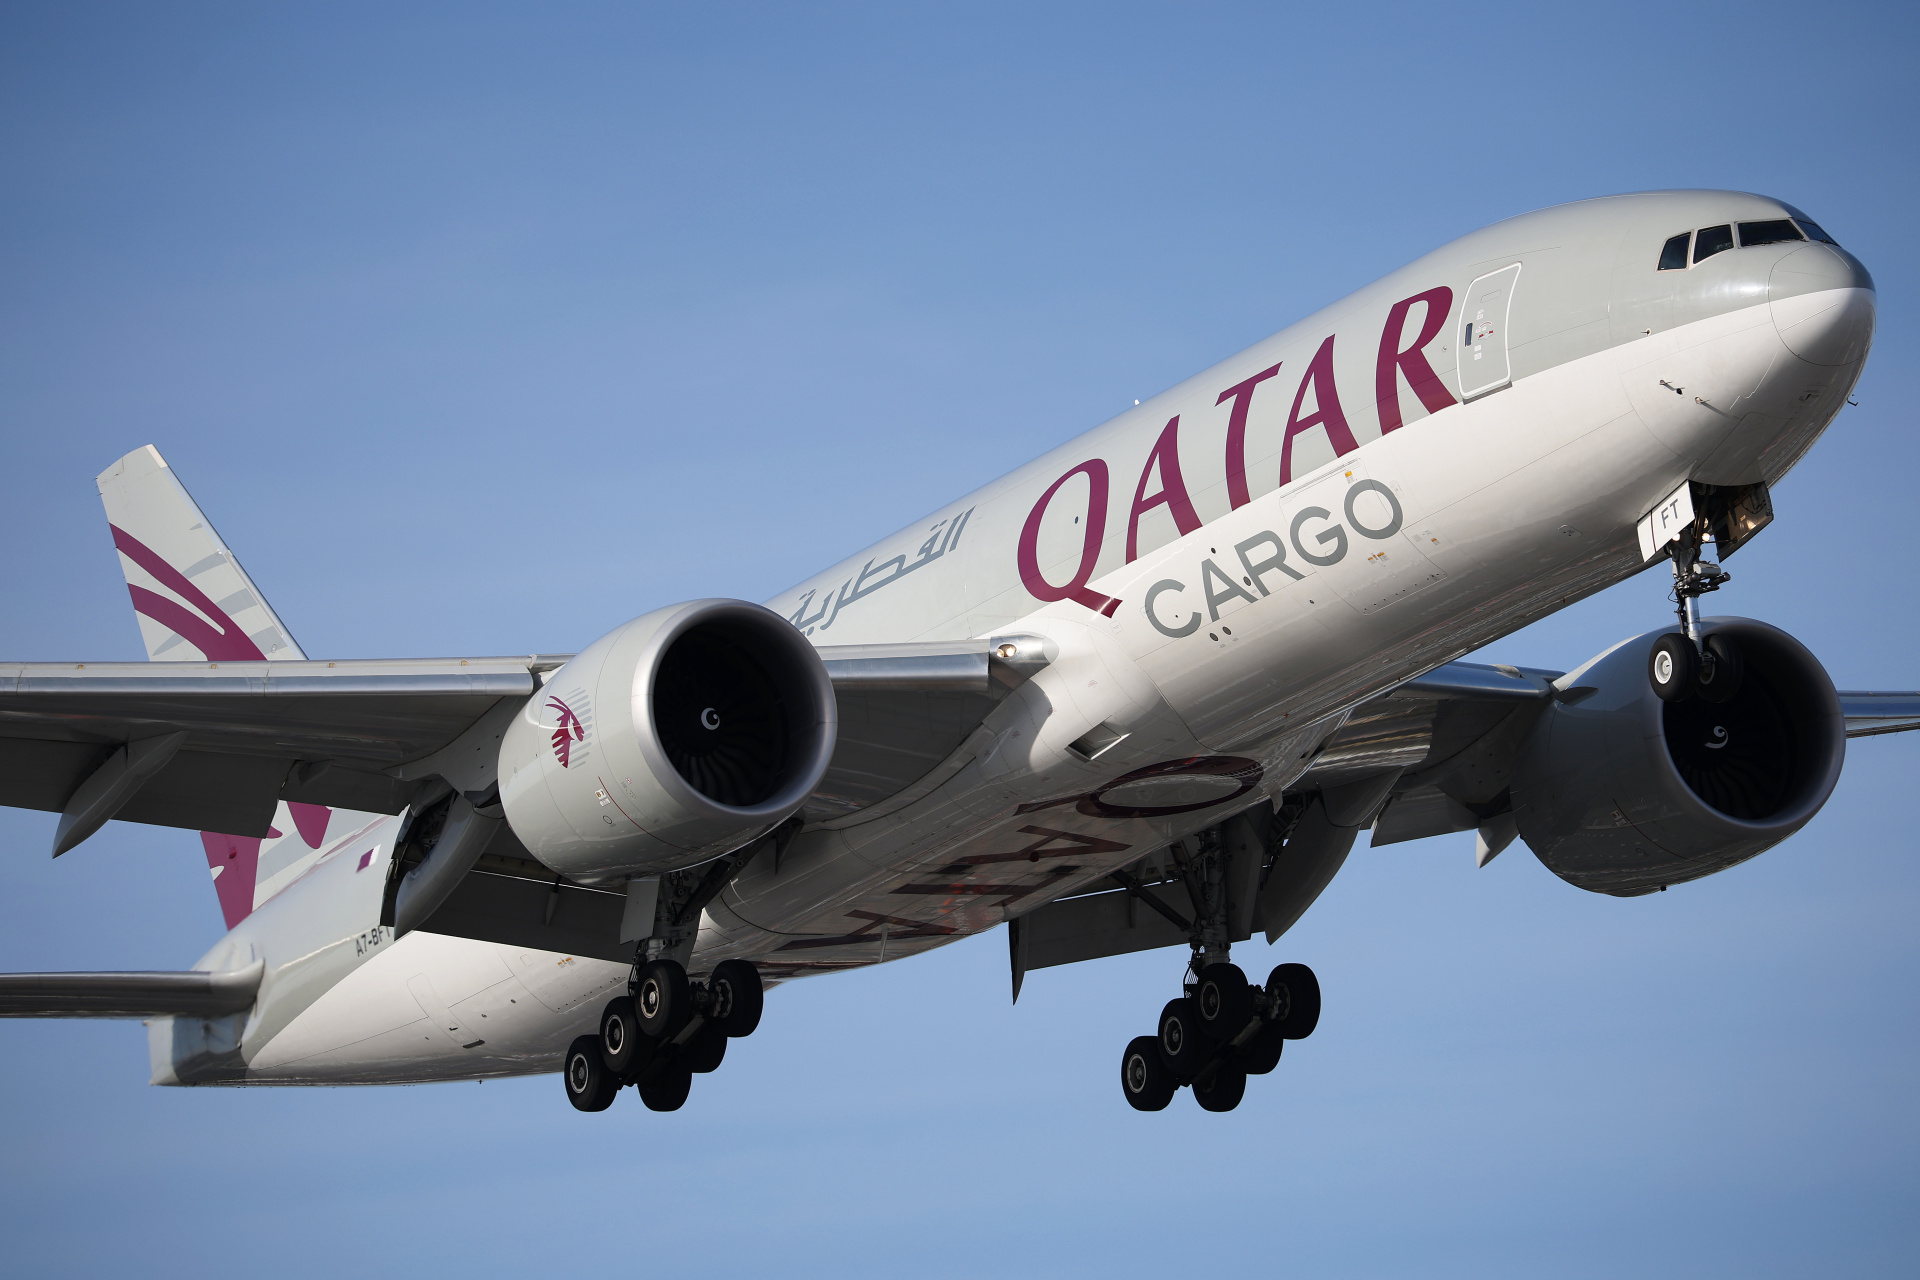 A7-BFT (Aircraft » EPWA Spotting » Boeing 777F » Qatar Airways Cargo)